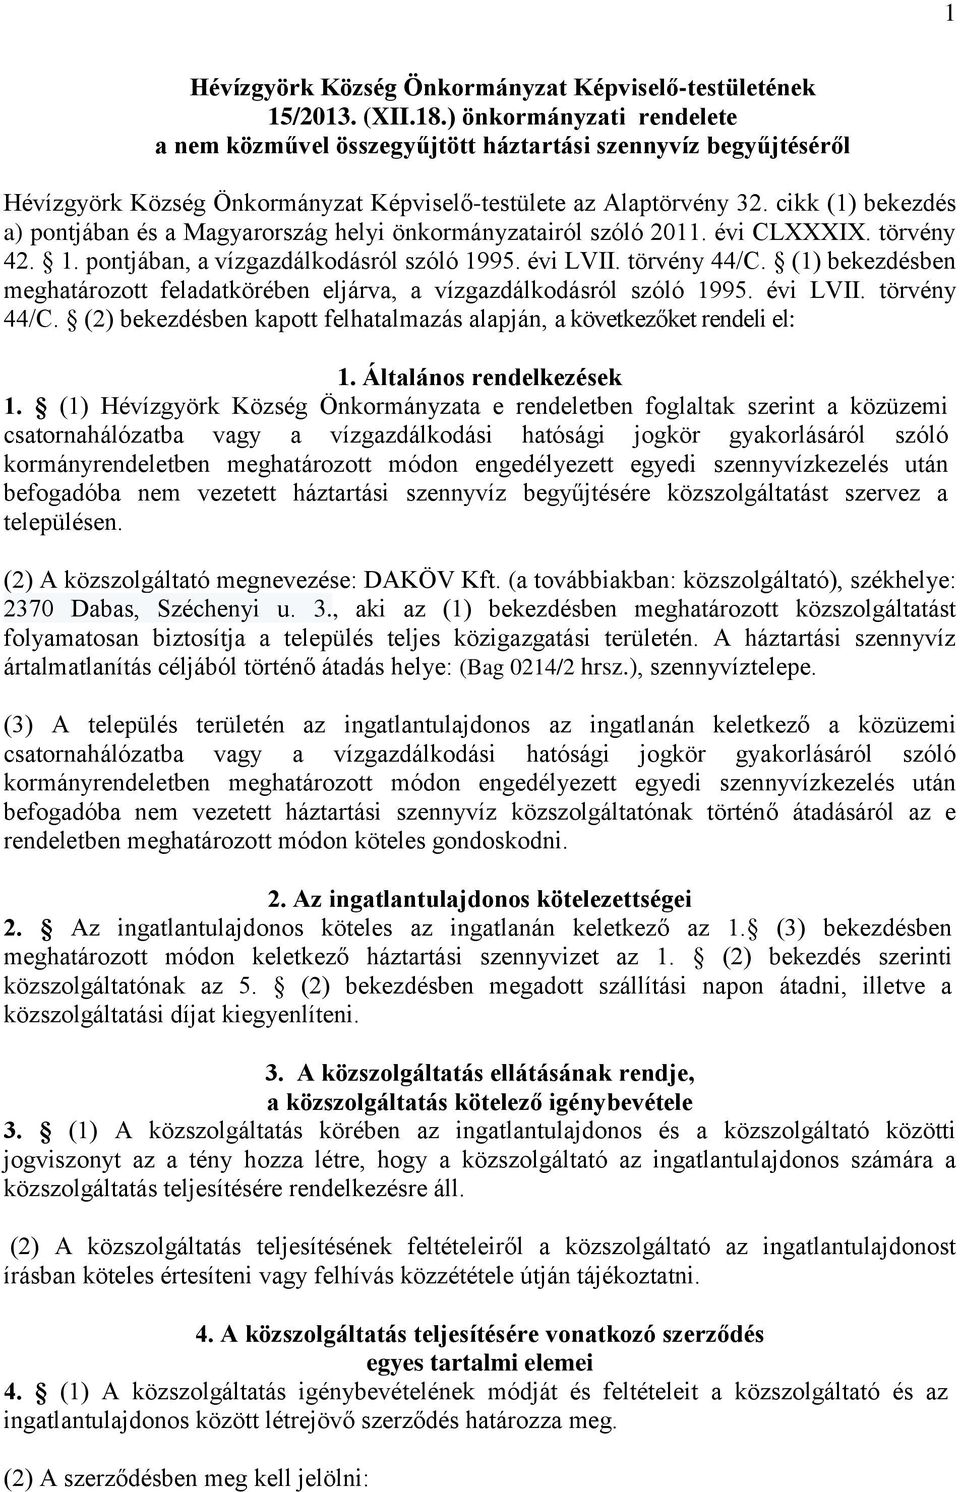 cikk (1) bekezdés a) pontjában és a Magyarország helyi önkormányzatairól szóló 2011. évi CLXXXIX. törvény 42. 1. pontjában, a vízgazdálkodásról szóló 1995. évi LVII. törvény 44/C.